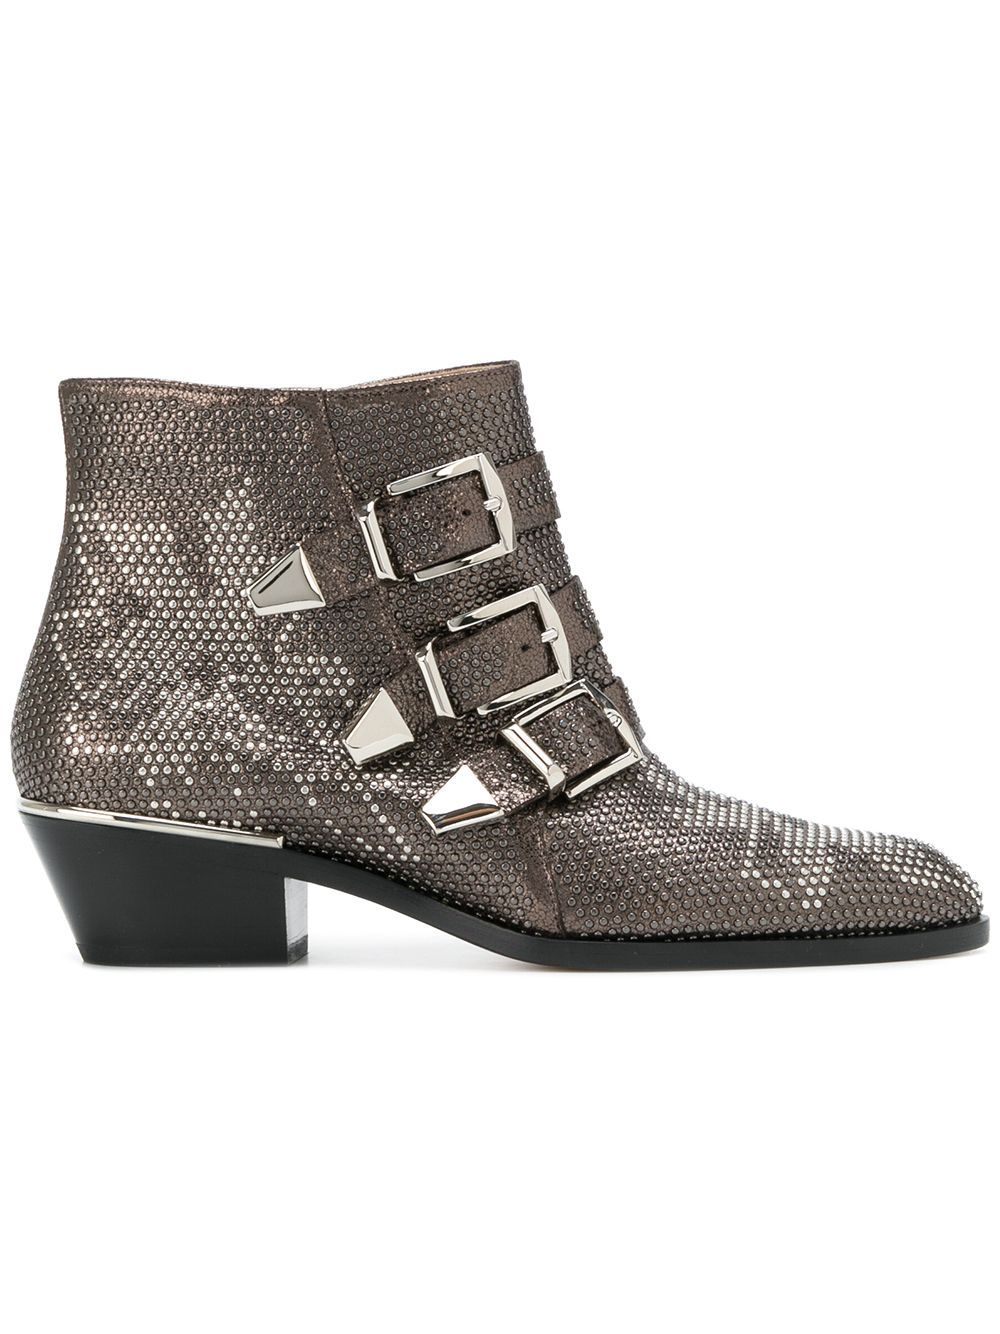 Chloé Susanna ankle boots - Grey | FarFetch Global